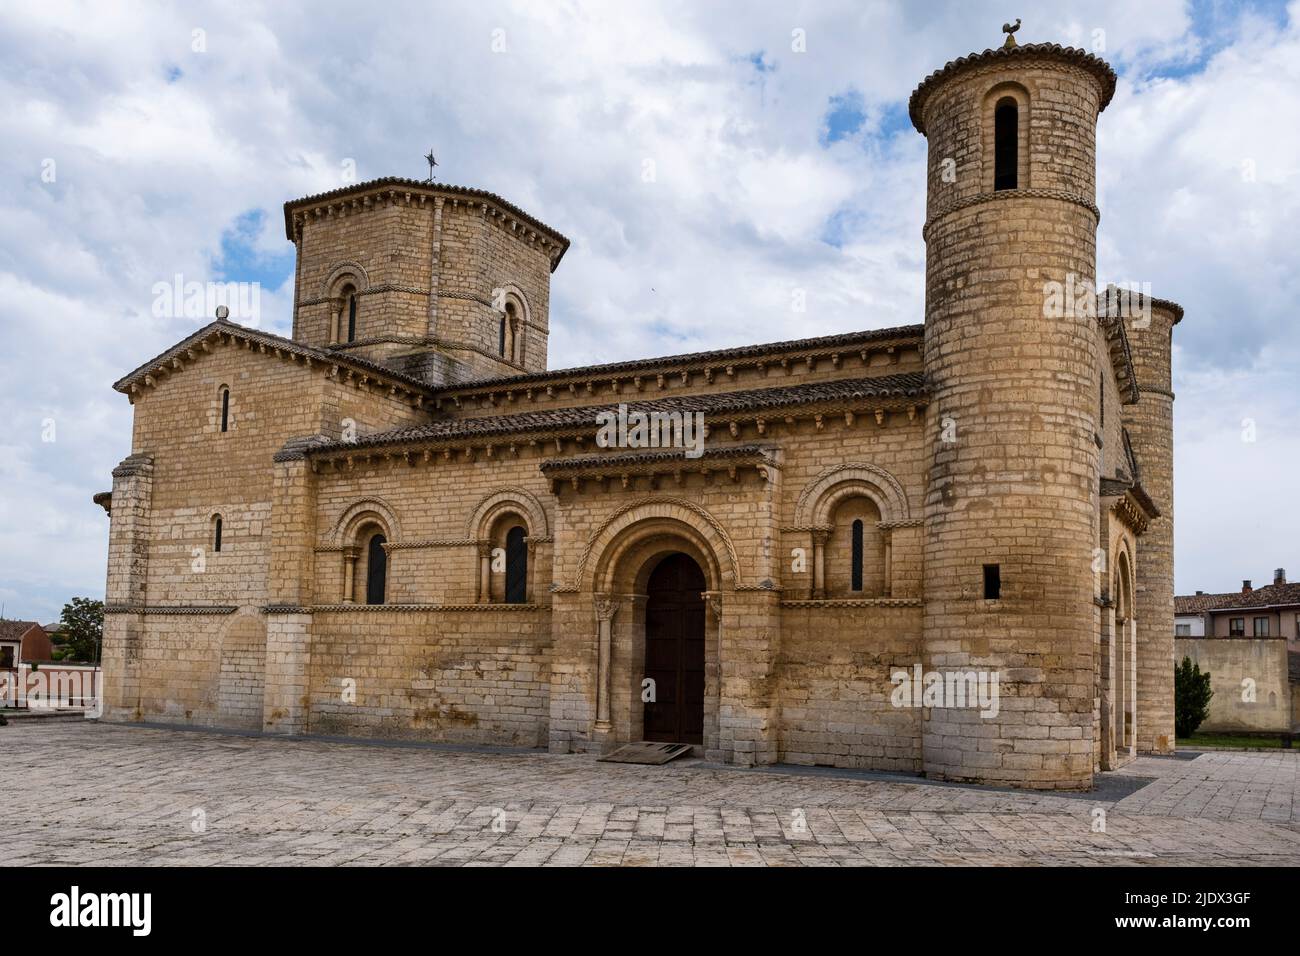 Spain, Castilla y Leon, Fromista. Church of Saint Martin of Tours, Romanesque, 11th Century. Stock Photo